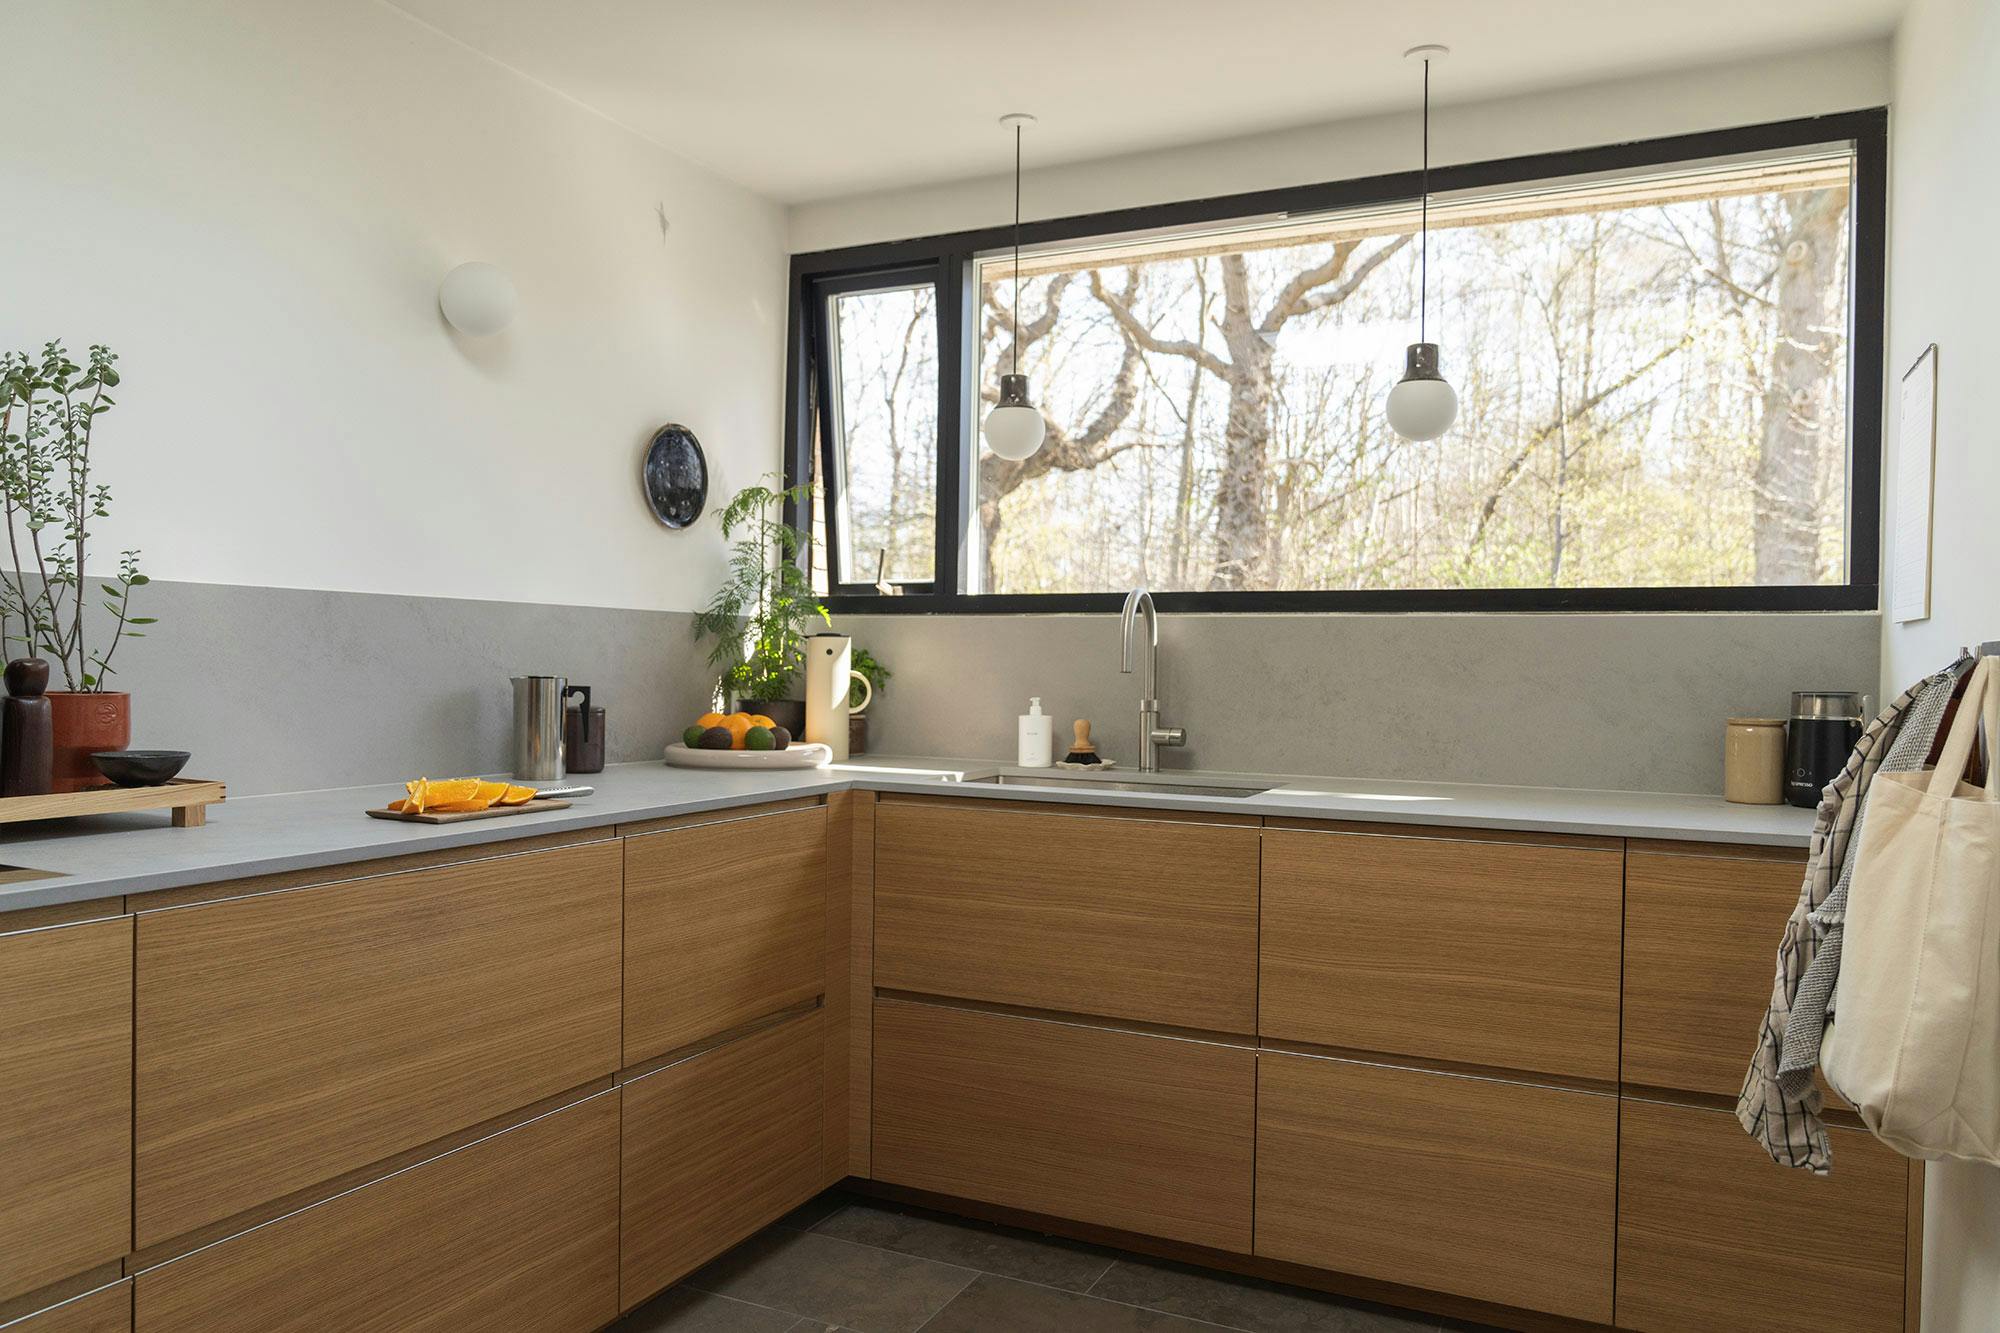 Numéro d'image 40 de la section actuelle de Dekton Arga creates an elegant atmosphere in this open plan kitchen with a minimalist approach de Cosentino France